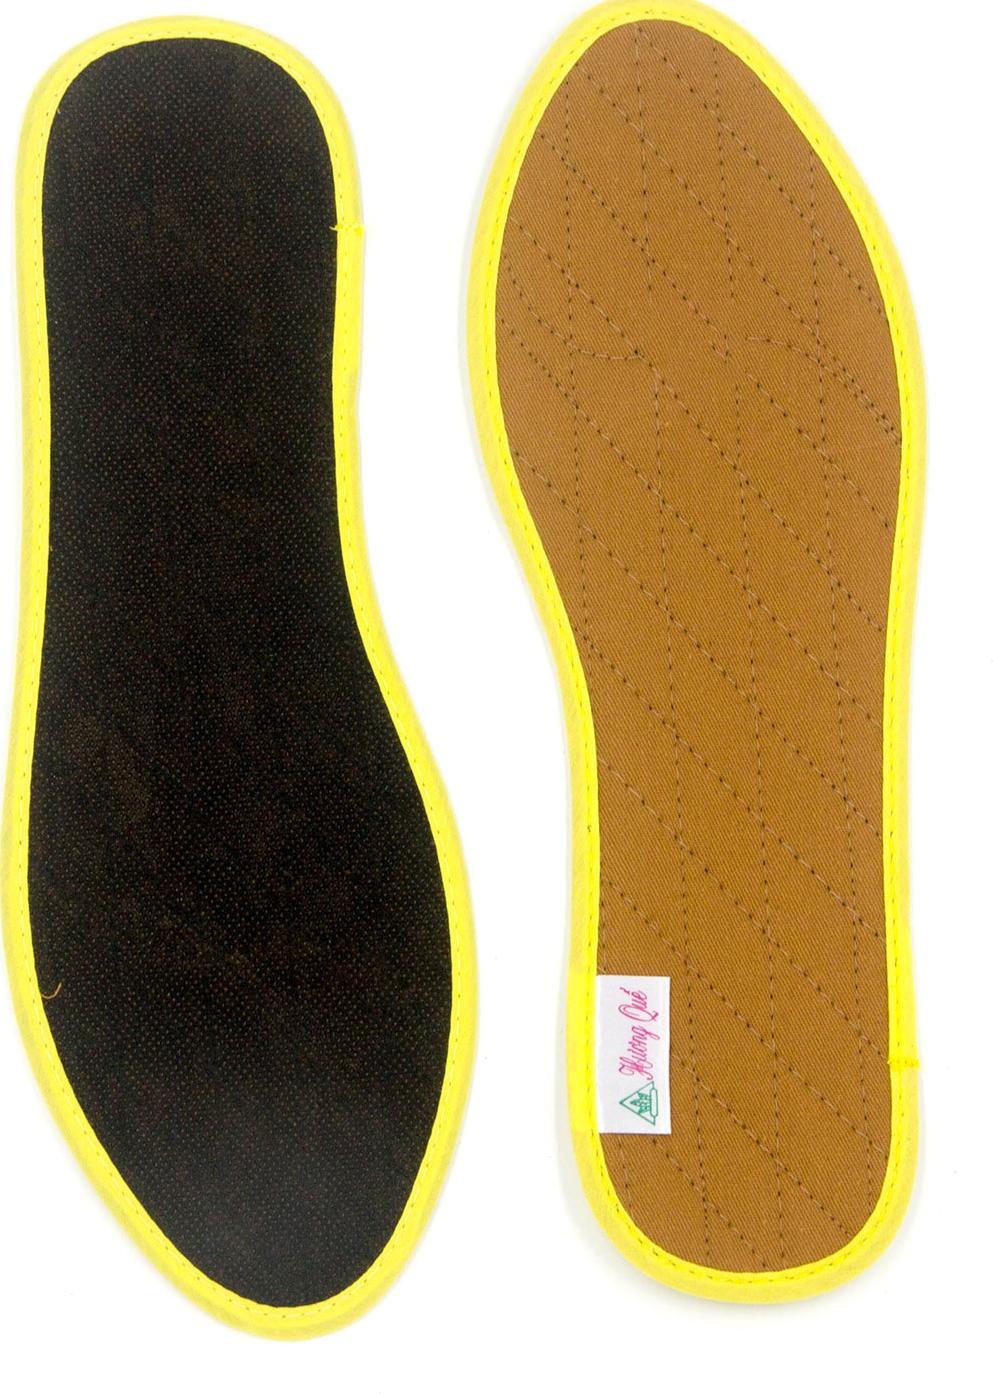 Lót giày vải cotton CI-01